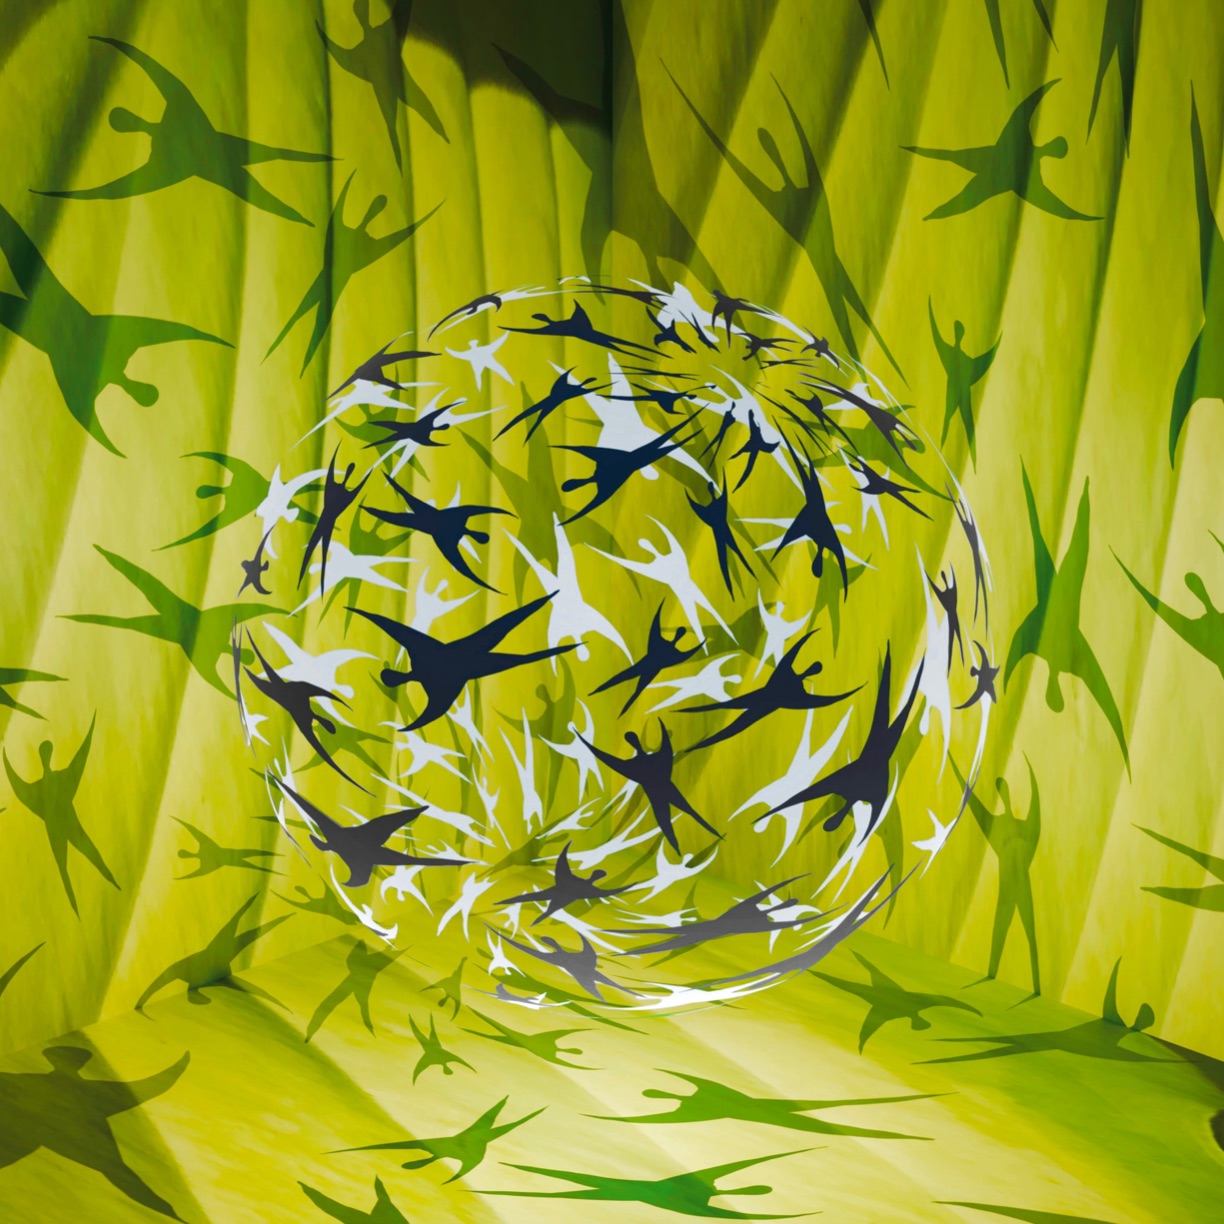 Atsushigraphのデジタルアート作品「Fresh Green Gathering」の画像です。